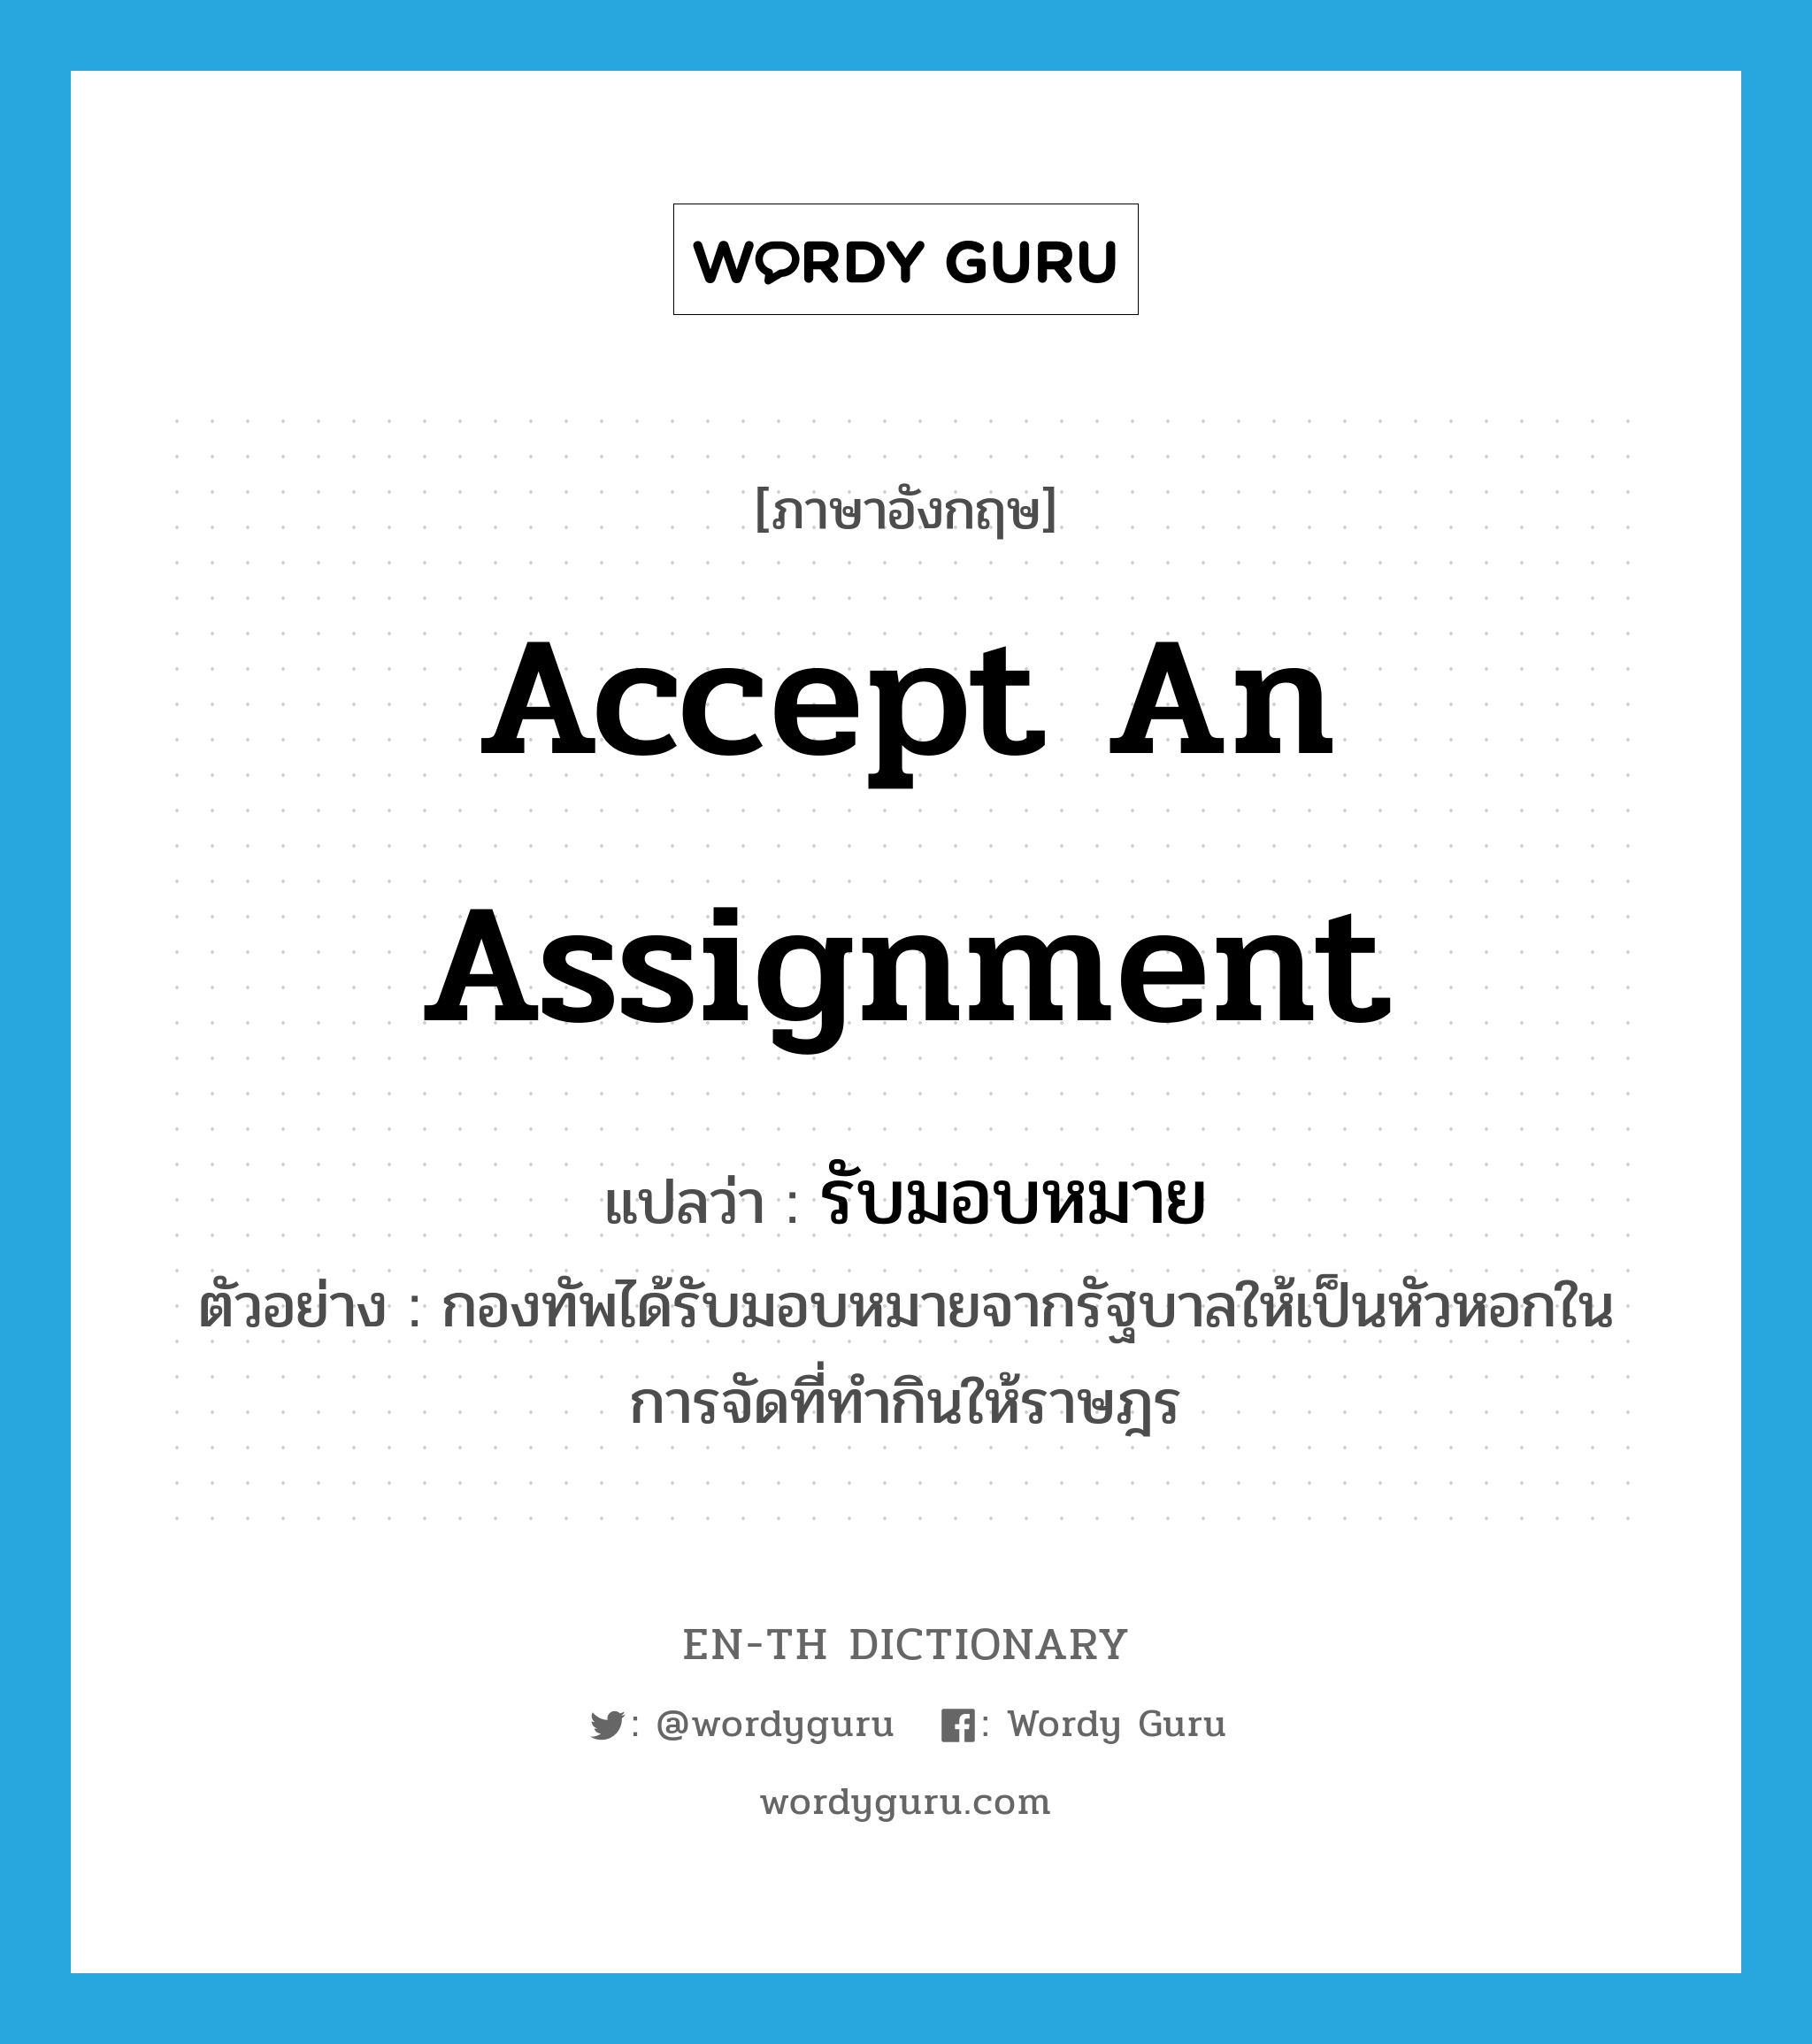 accept an assignment แปลว่า? คำศัพท์ในกลุ่มประเภท V, คำศัพท์ภาษาอังกฤษ accept an assignment แปลว่า รับมอบหมาย ประเภท V ตัวอย่าง กองทัพได้รับมอบหมายจากรัฐบาลให้เป็นหัวหอกในการจัดที่ทำกินให้ราษฎร หมวด V